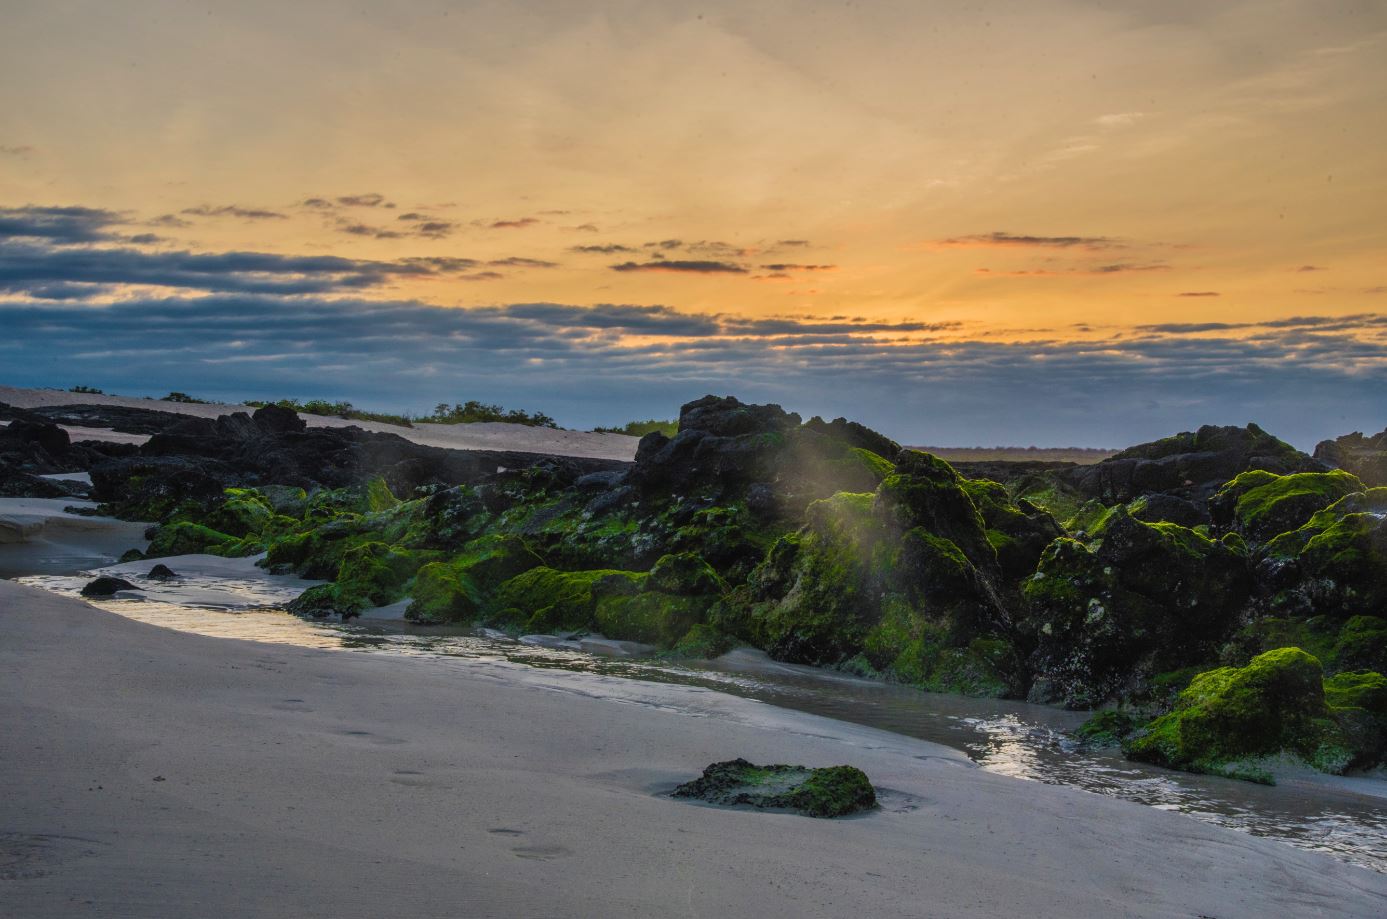 Galapagos Beaches: Las Bachas